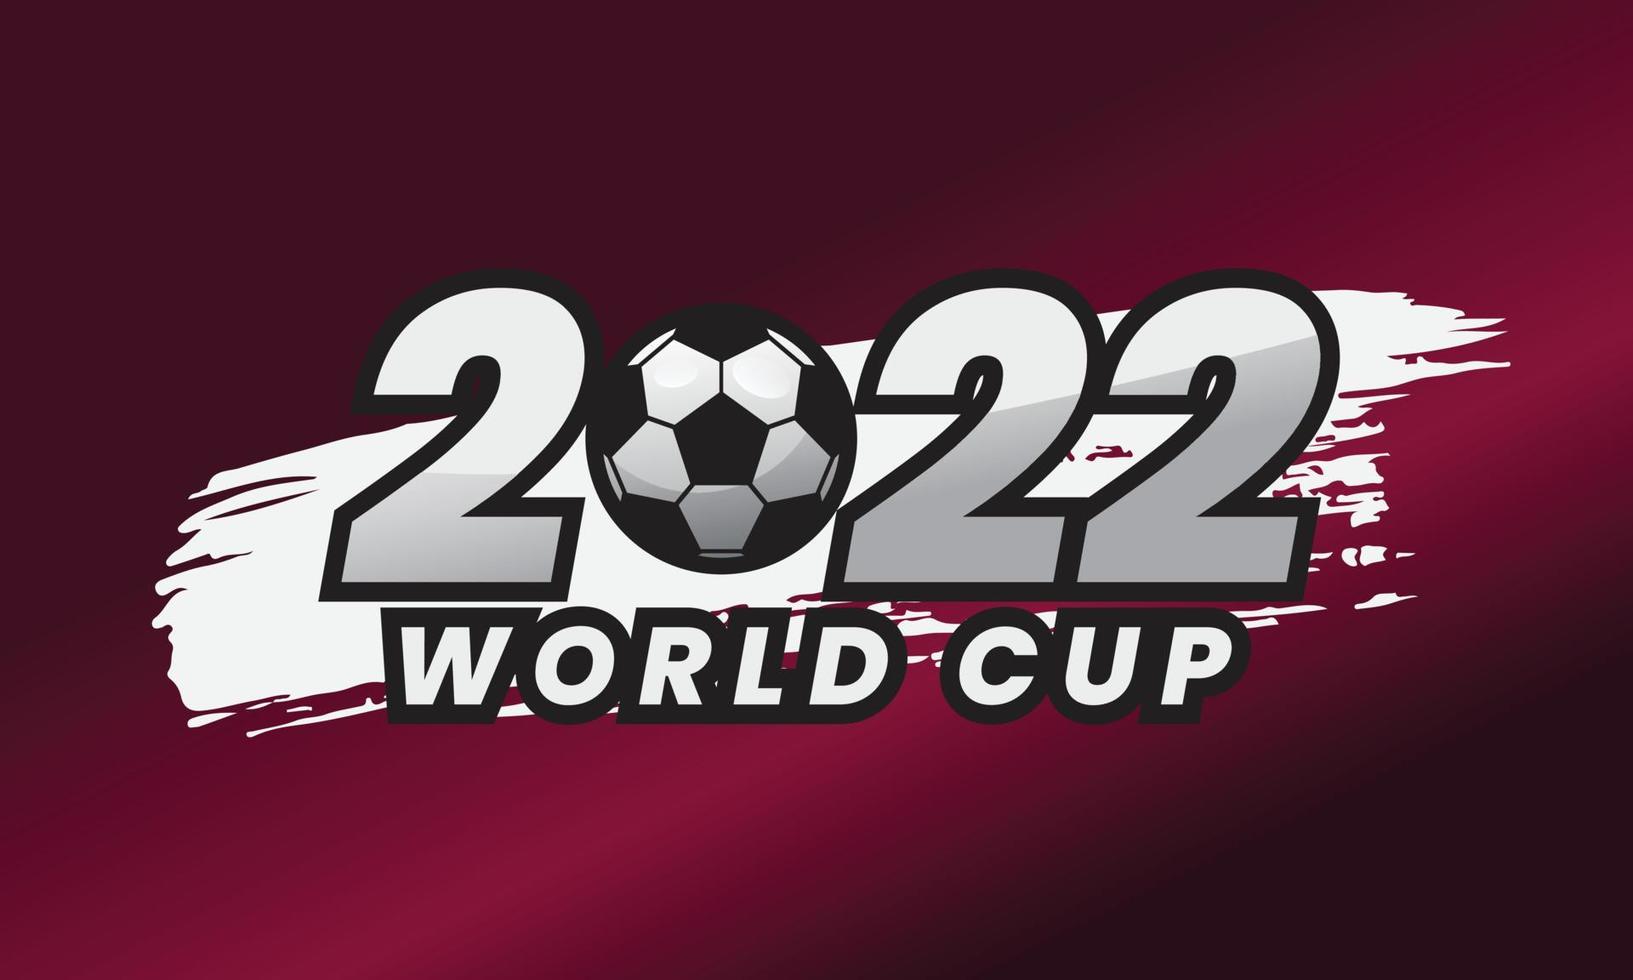 coupe du monde qatar 2022 avec style de coup de pinceau vecteur